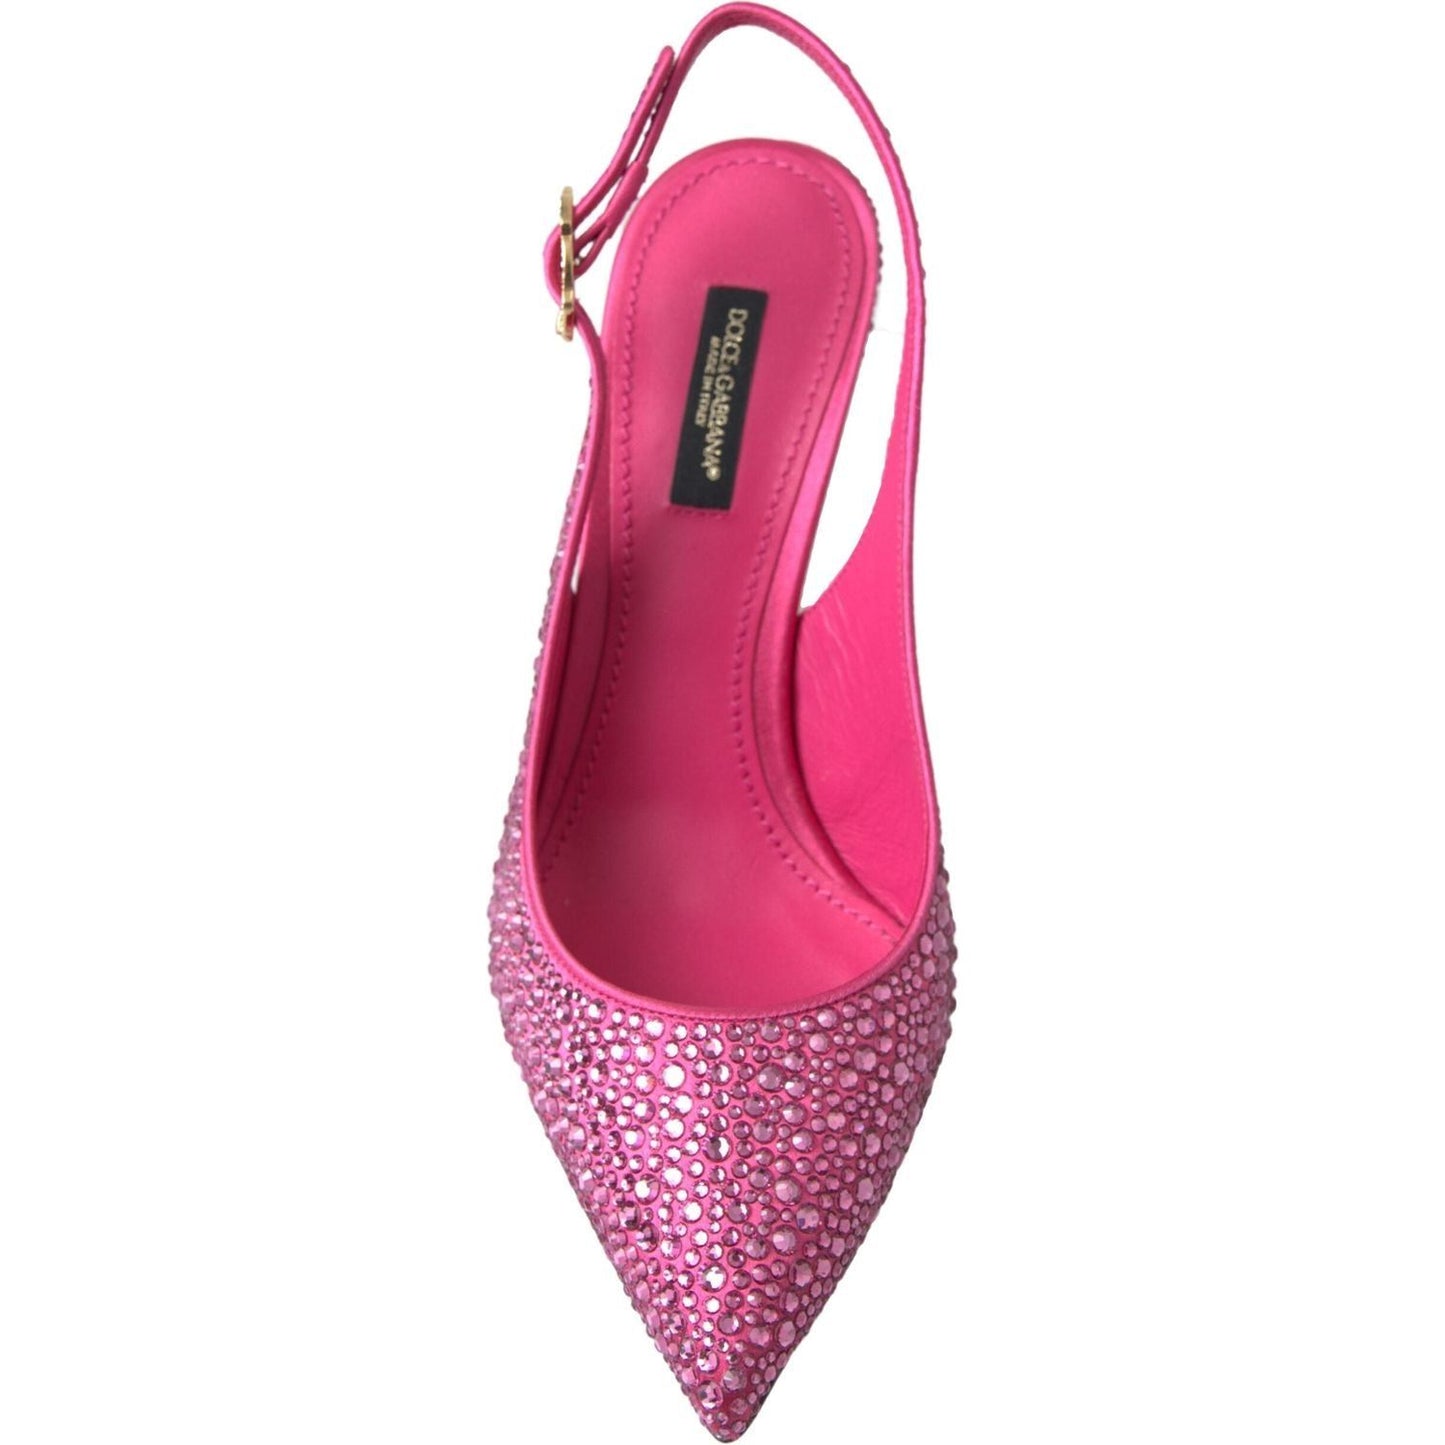 Dolce & Gabbana Elegant Slingback Heels in Pink Silk Blend pink-slingbacks-crystal-pumps-shoes